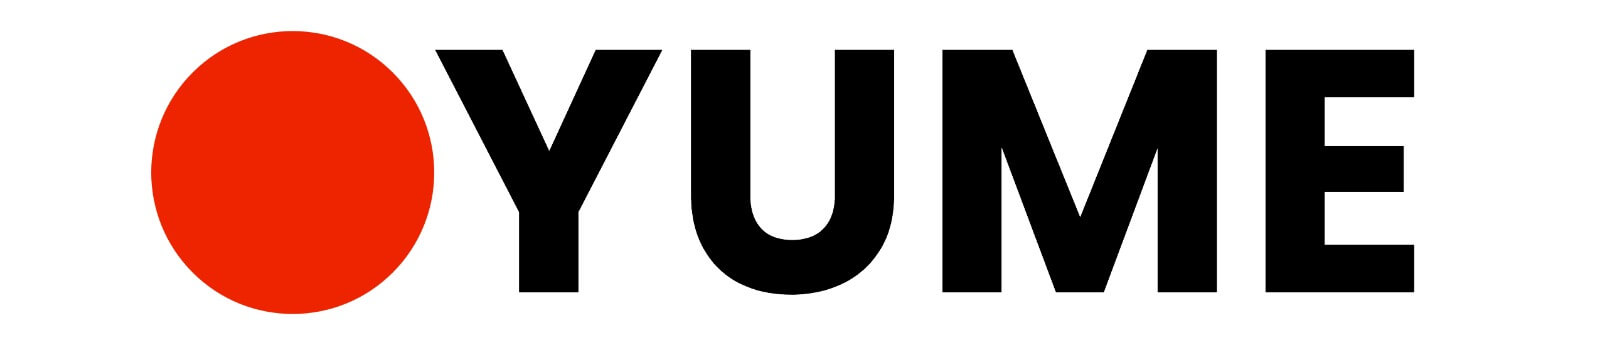 YUME Restaurant Sponsor